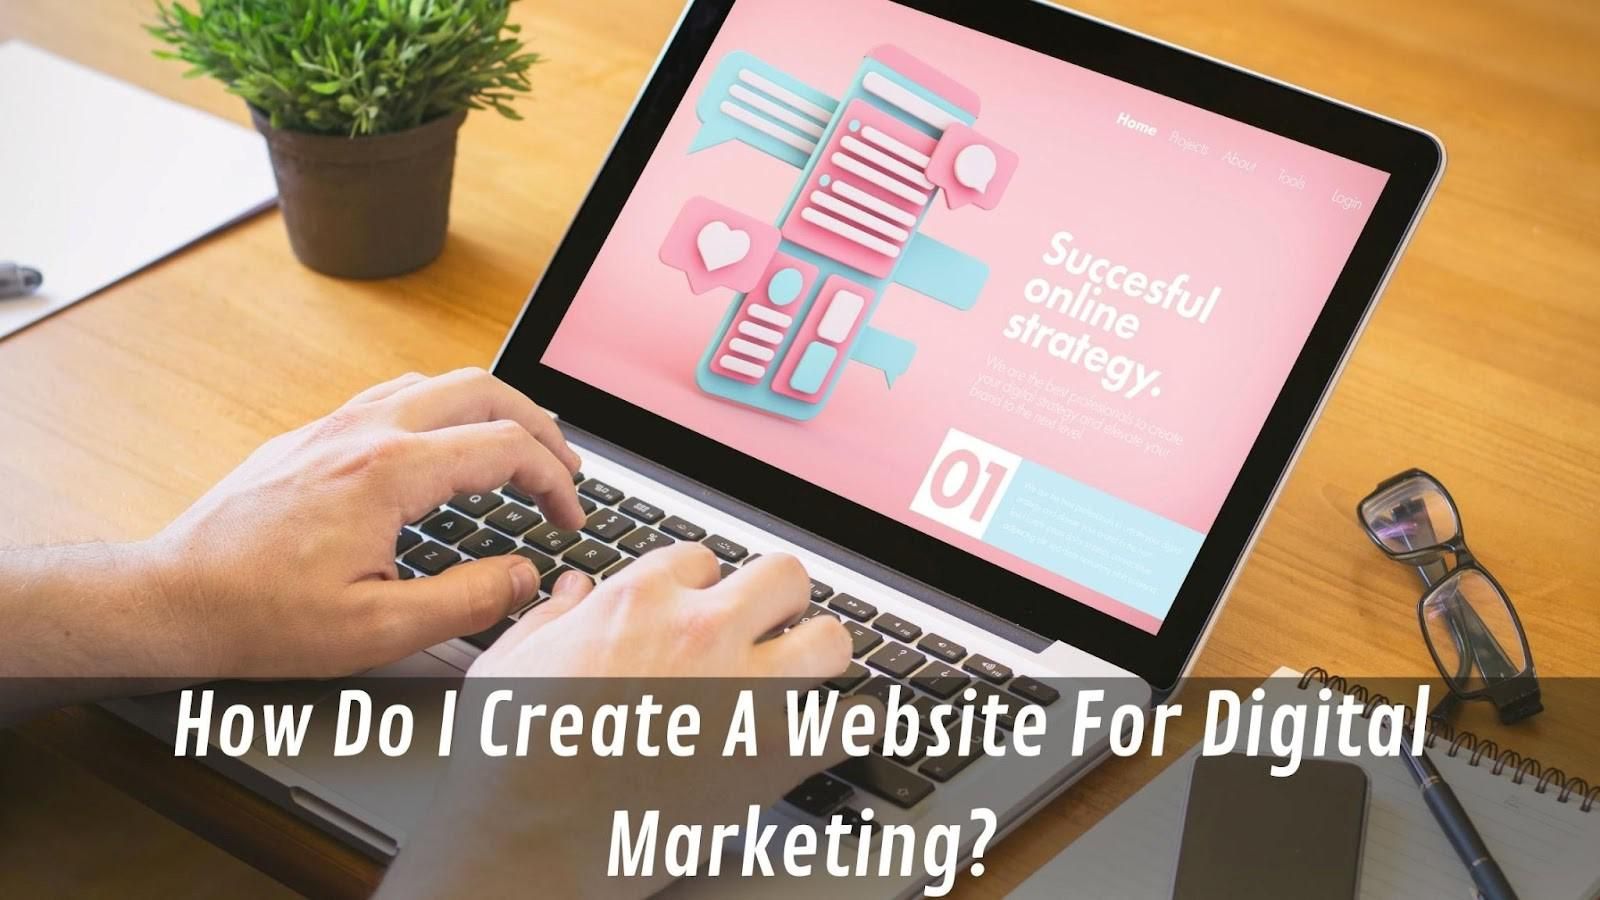 How Do I Create A Website For Digital Marketing?